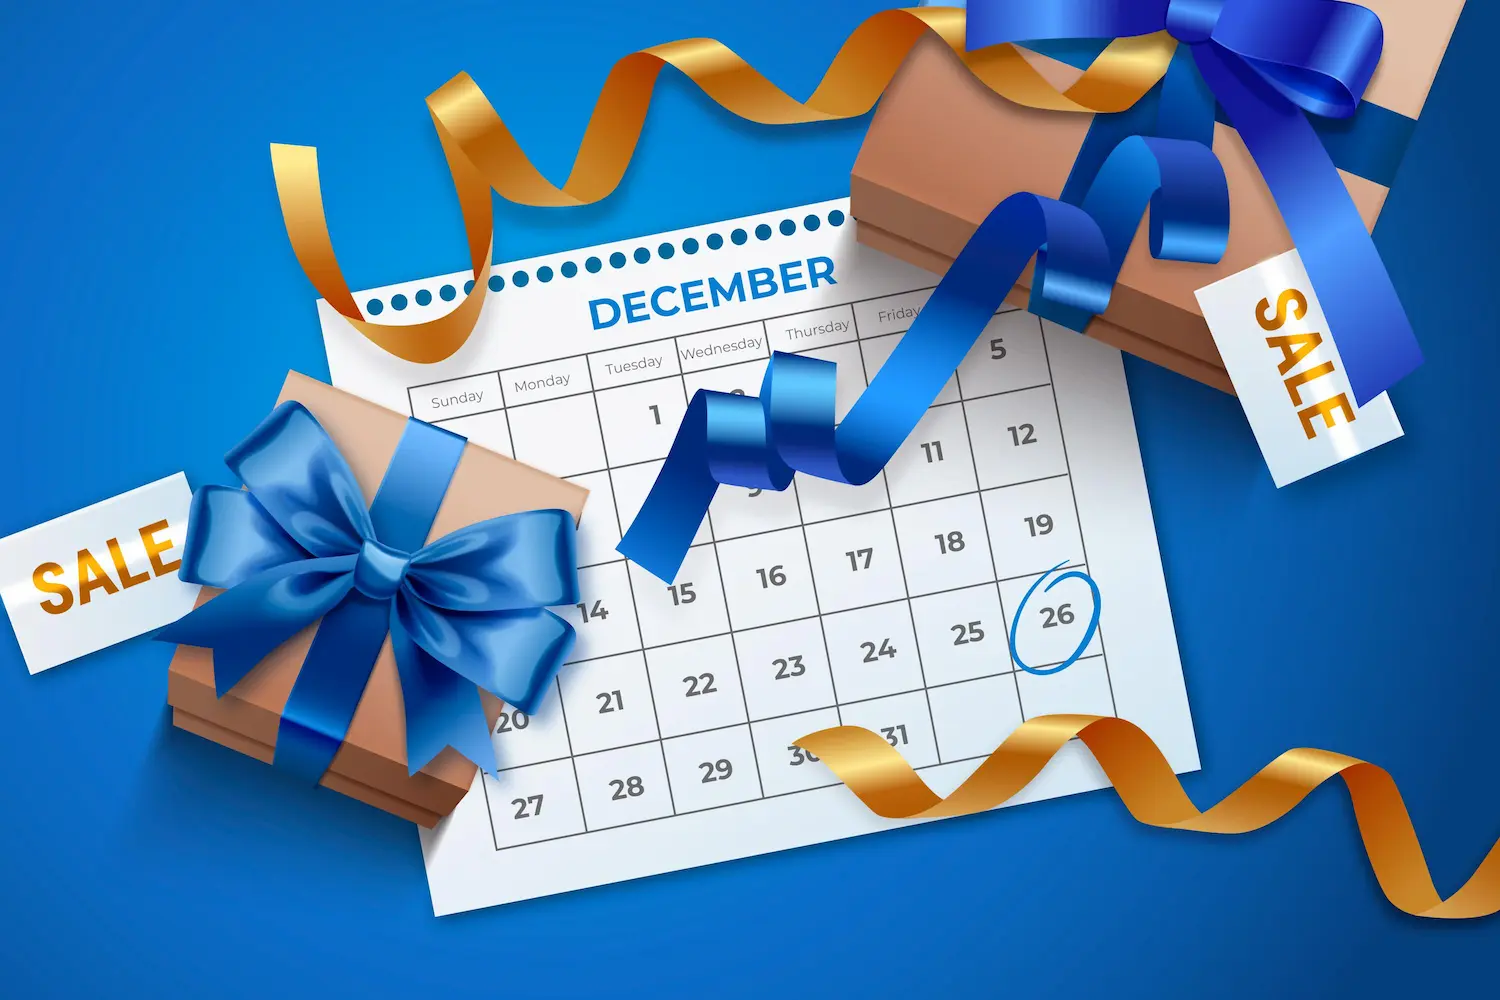 Desenho de um calendário com presentes em volta, tags escrito “sale” e fitas azul e laranja.